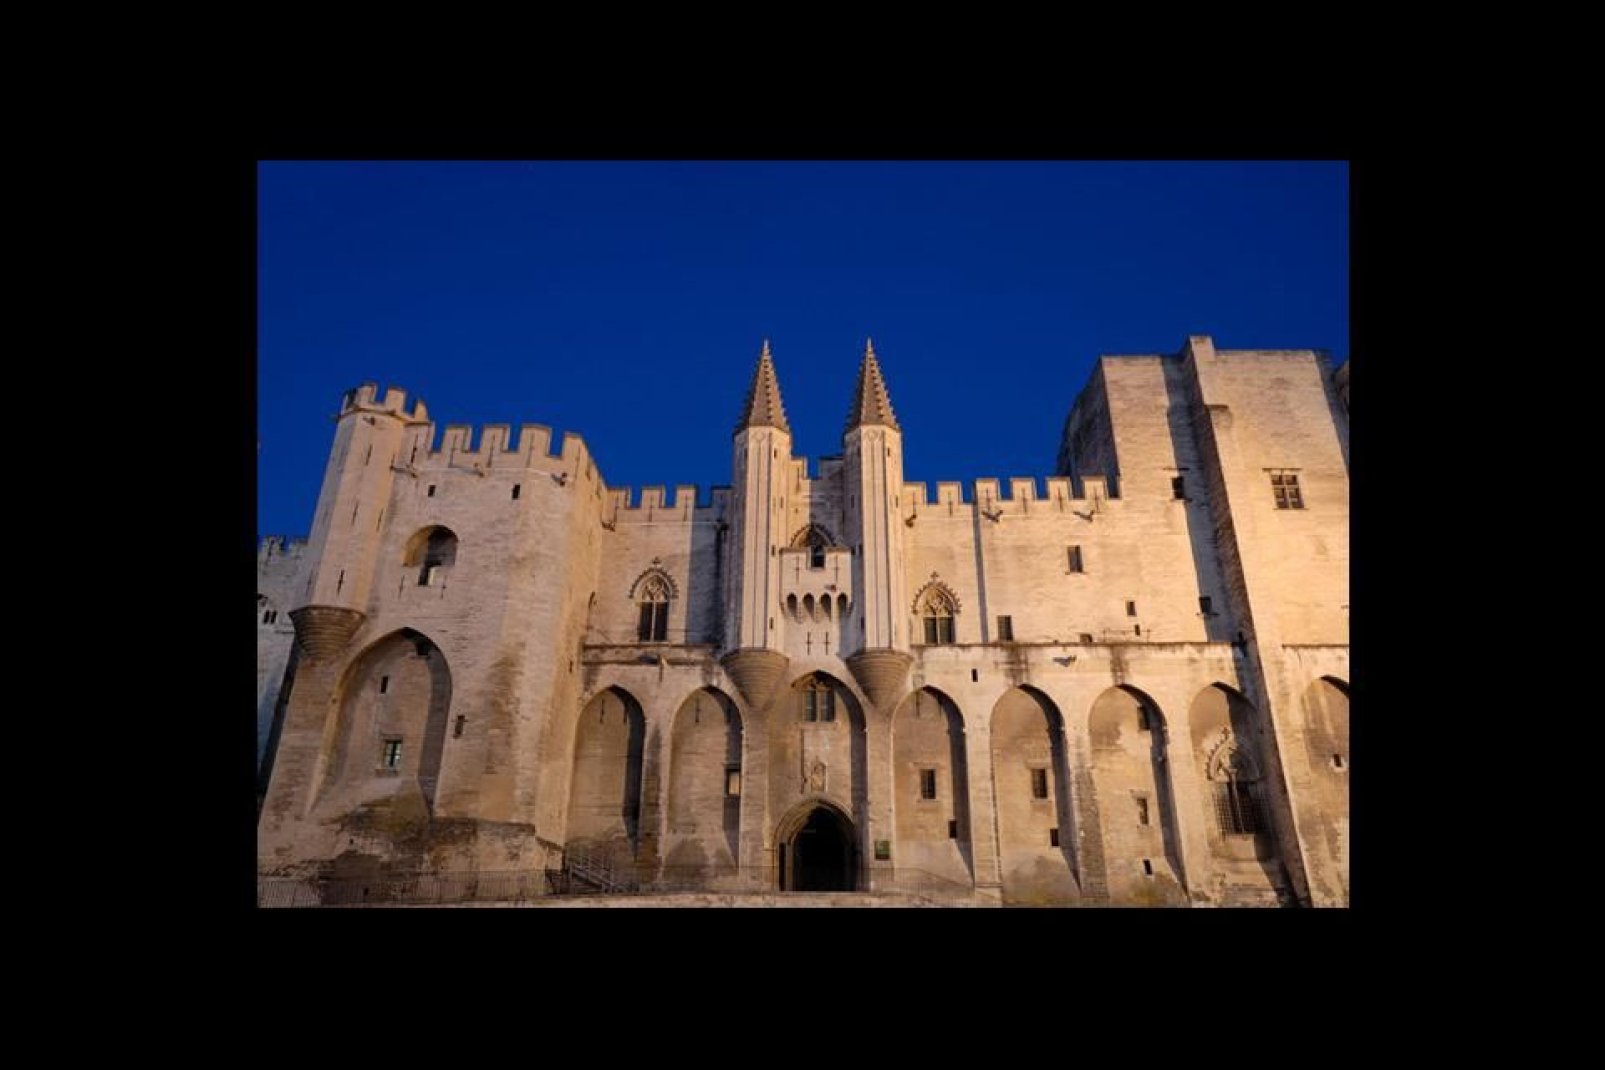 Der ehrwürdige Papstpalast, das größte gotische Bauwerk des Mittelalters, ist Festung und Feudalschloss zugleich. Insgesamt wurden dort sechs Konklaven abgehalten!